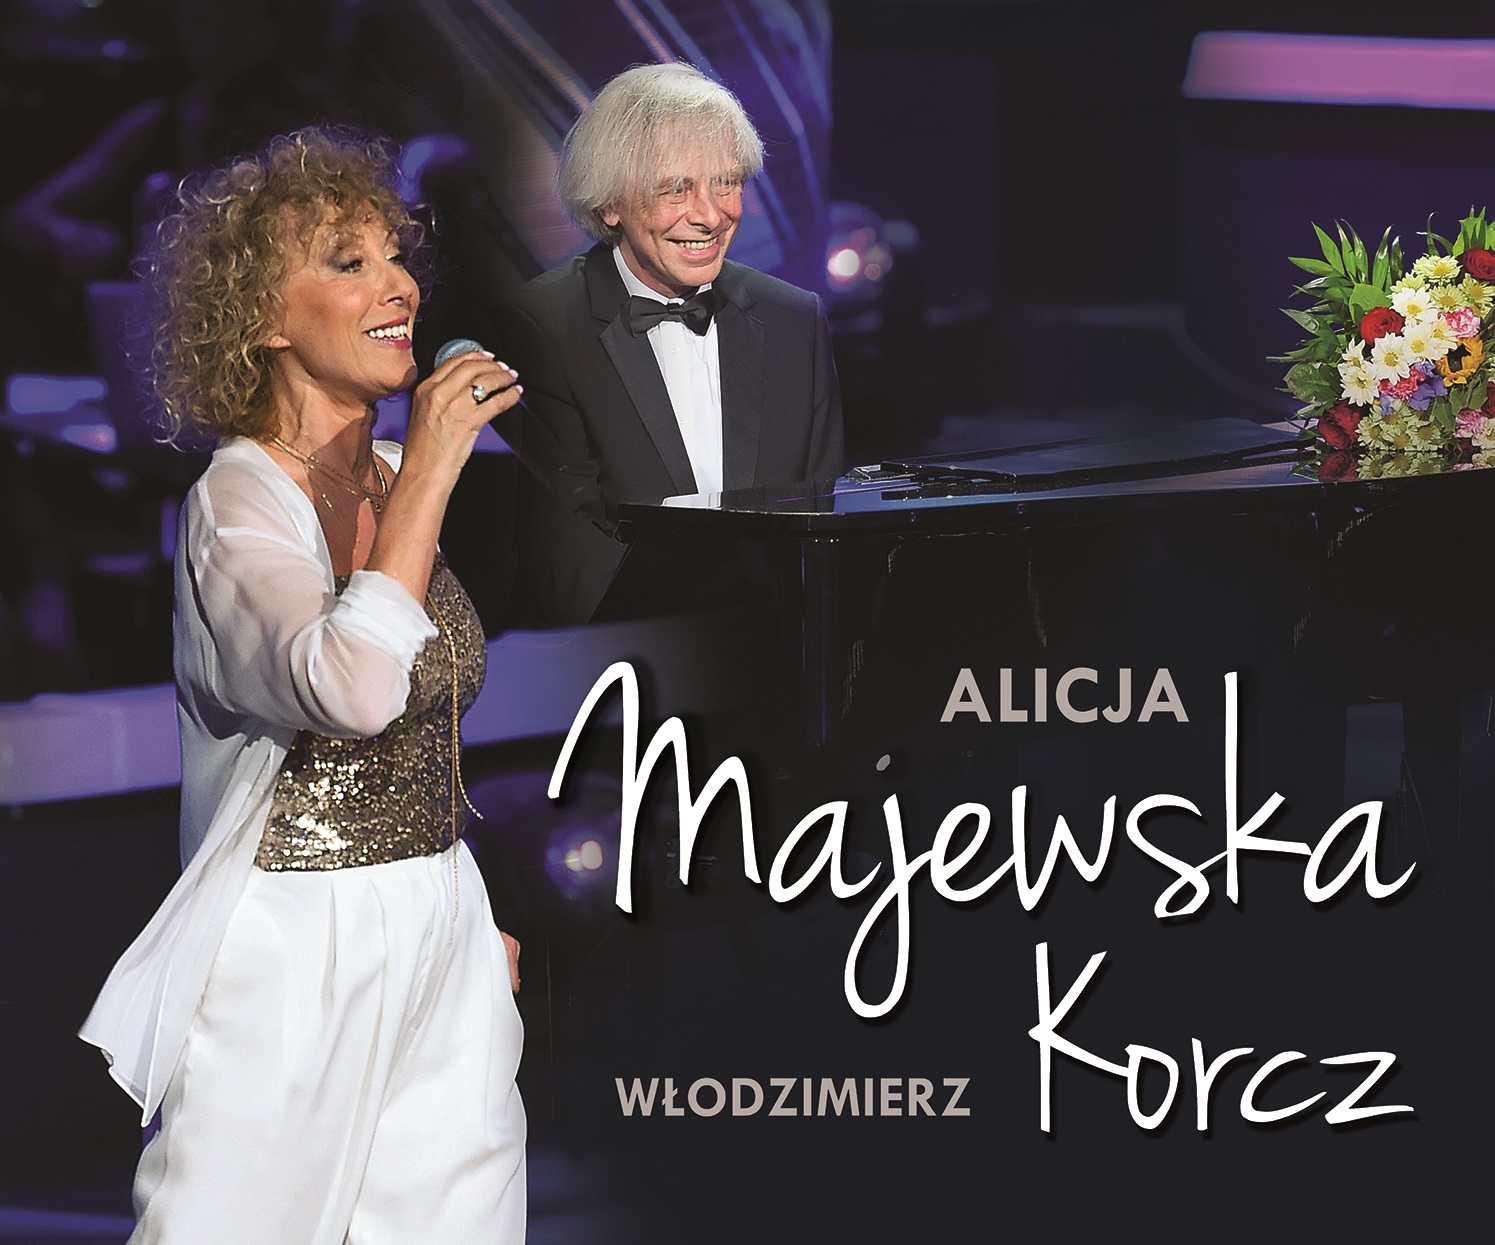 Alicja Majewska i Włodzimierz Korcz oraz Warsaw Opera Quartet - Okrągły jubileusz